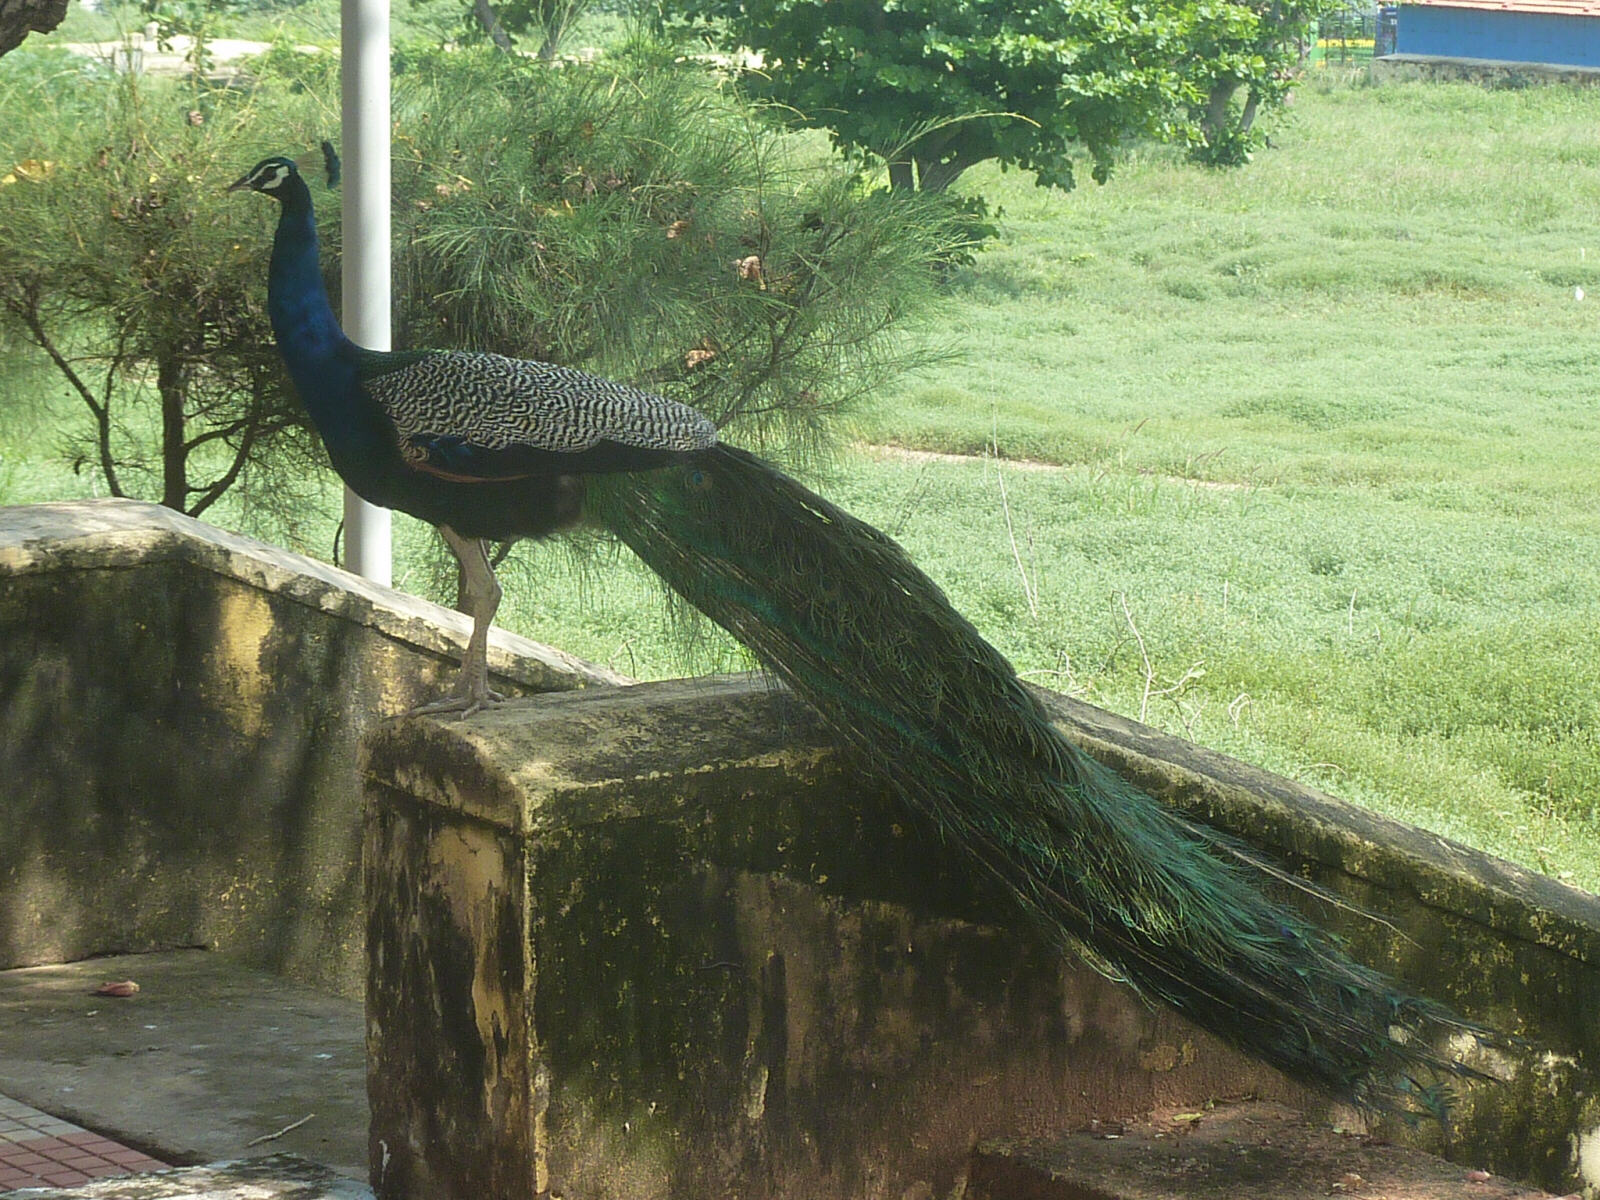 A peacock at the Hotel Tamil Nadu in Kanyakumari